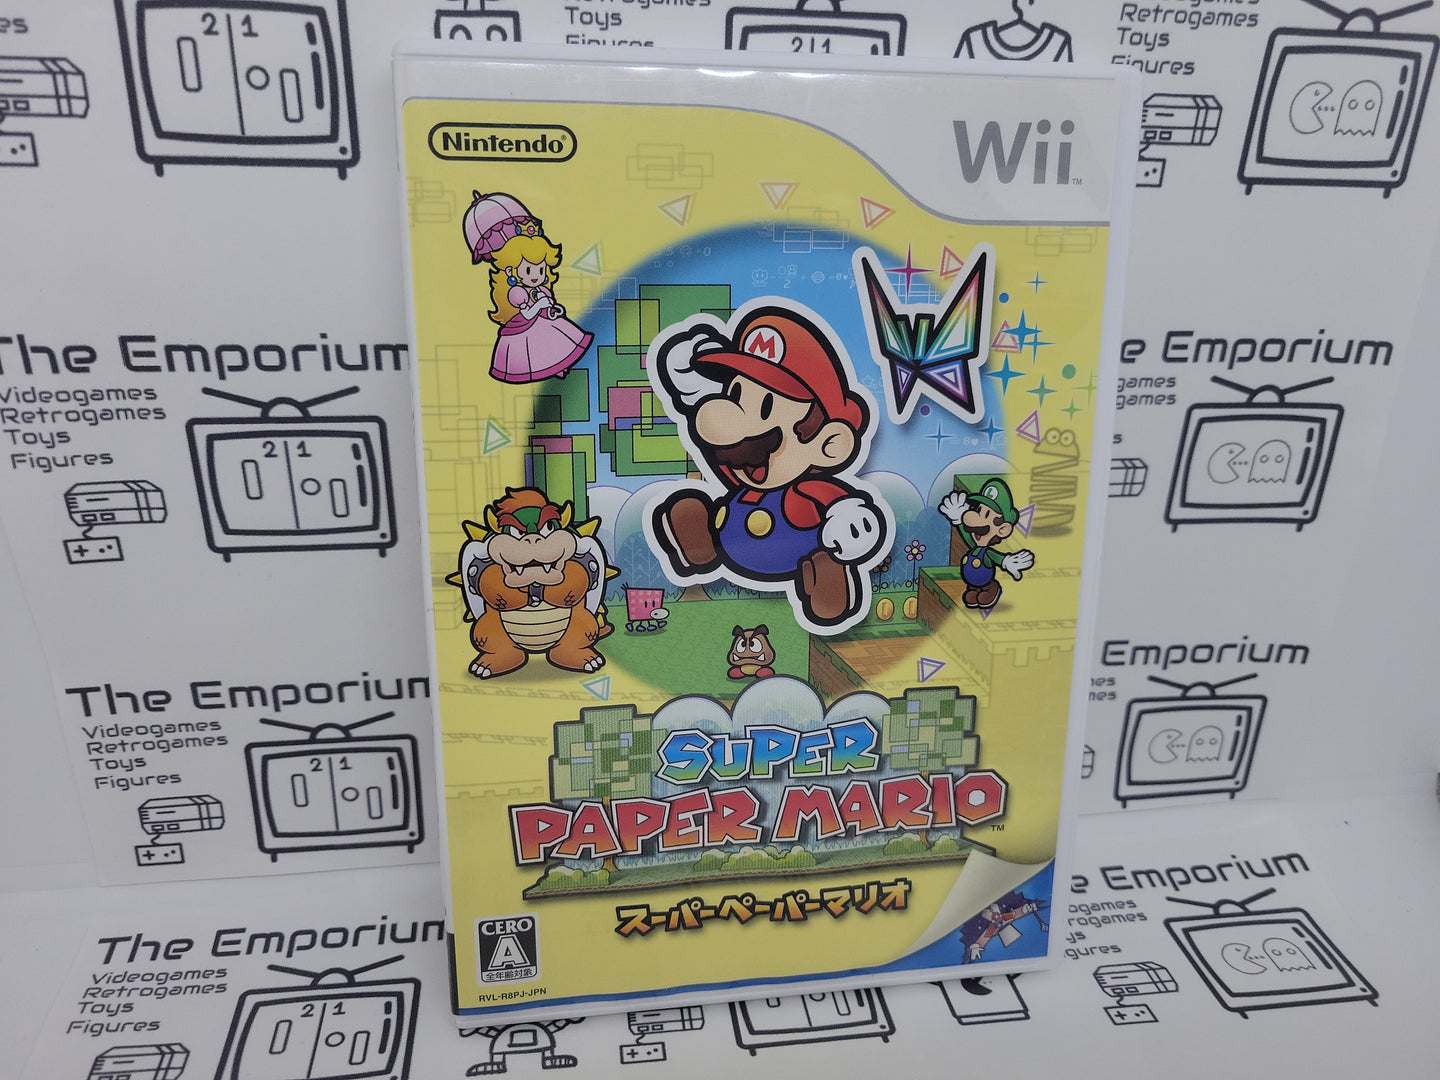 Super Paper Mario - Nintendo Wii